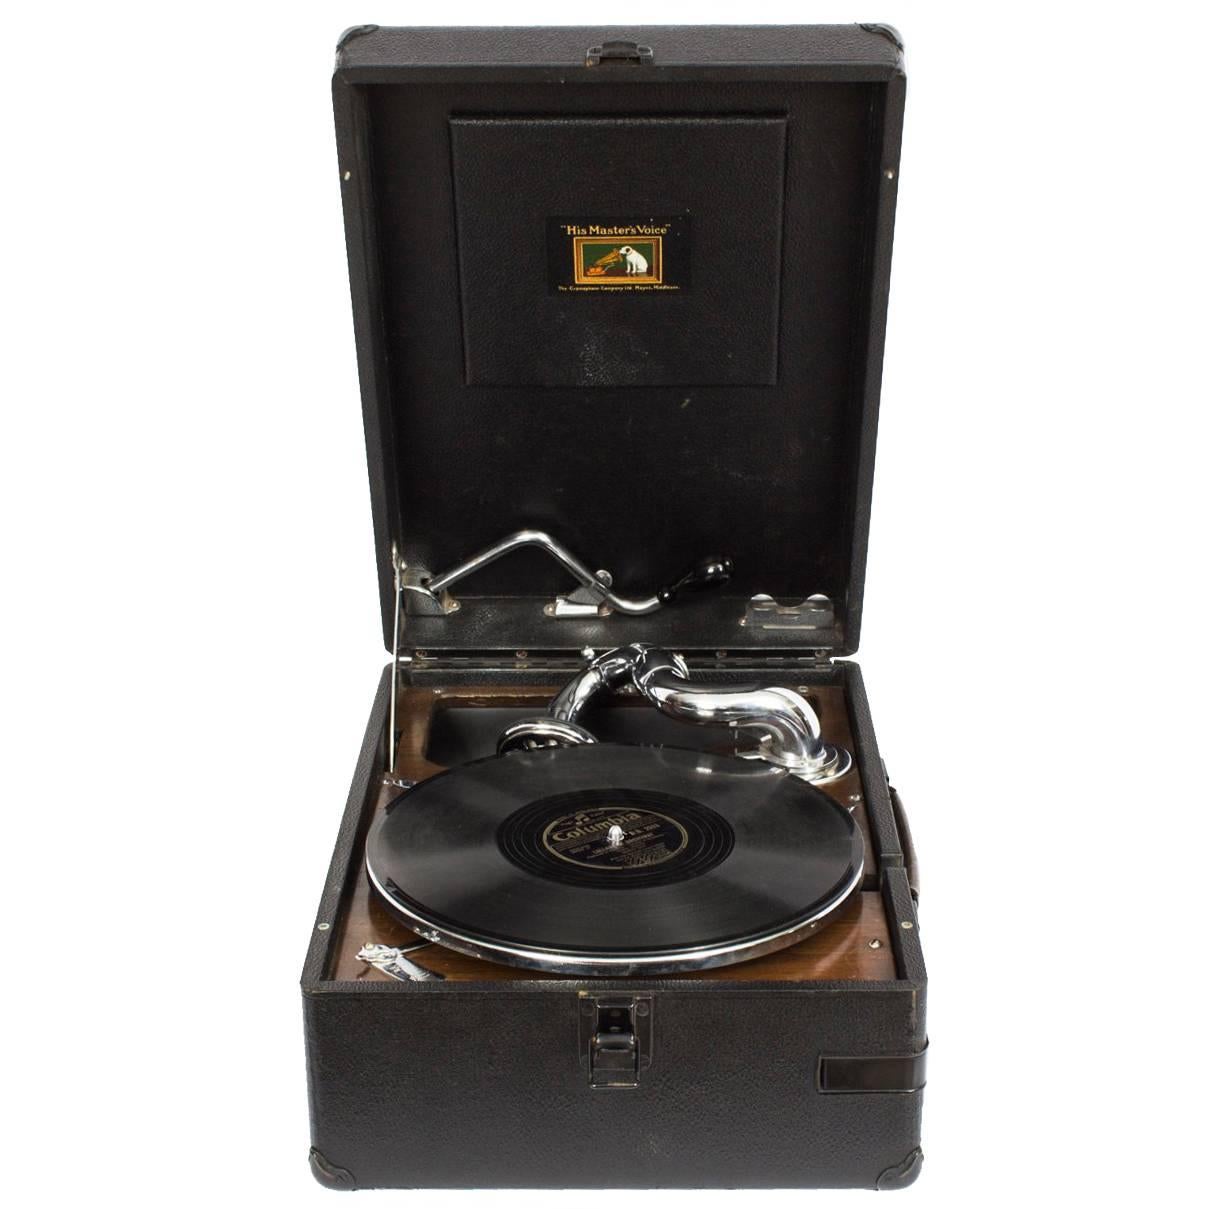 Antique Portable HMV Gramophone Mod 102 Black, circa 1935